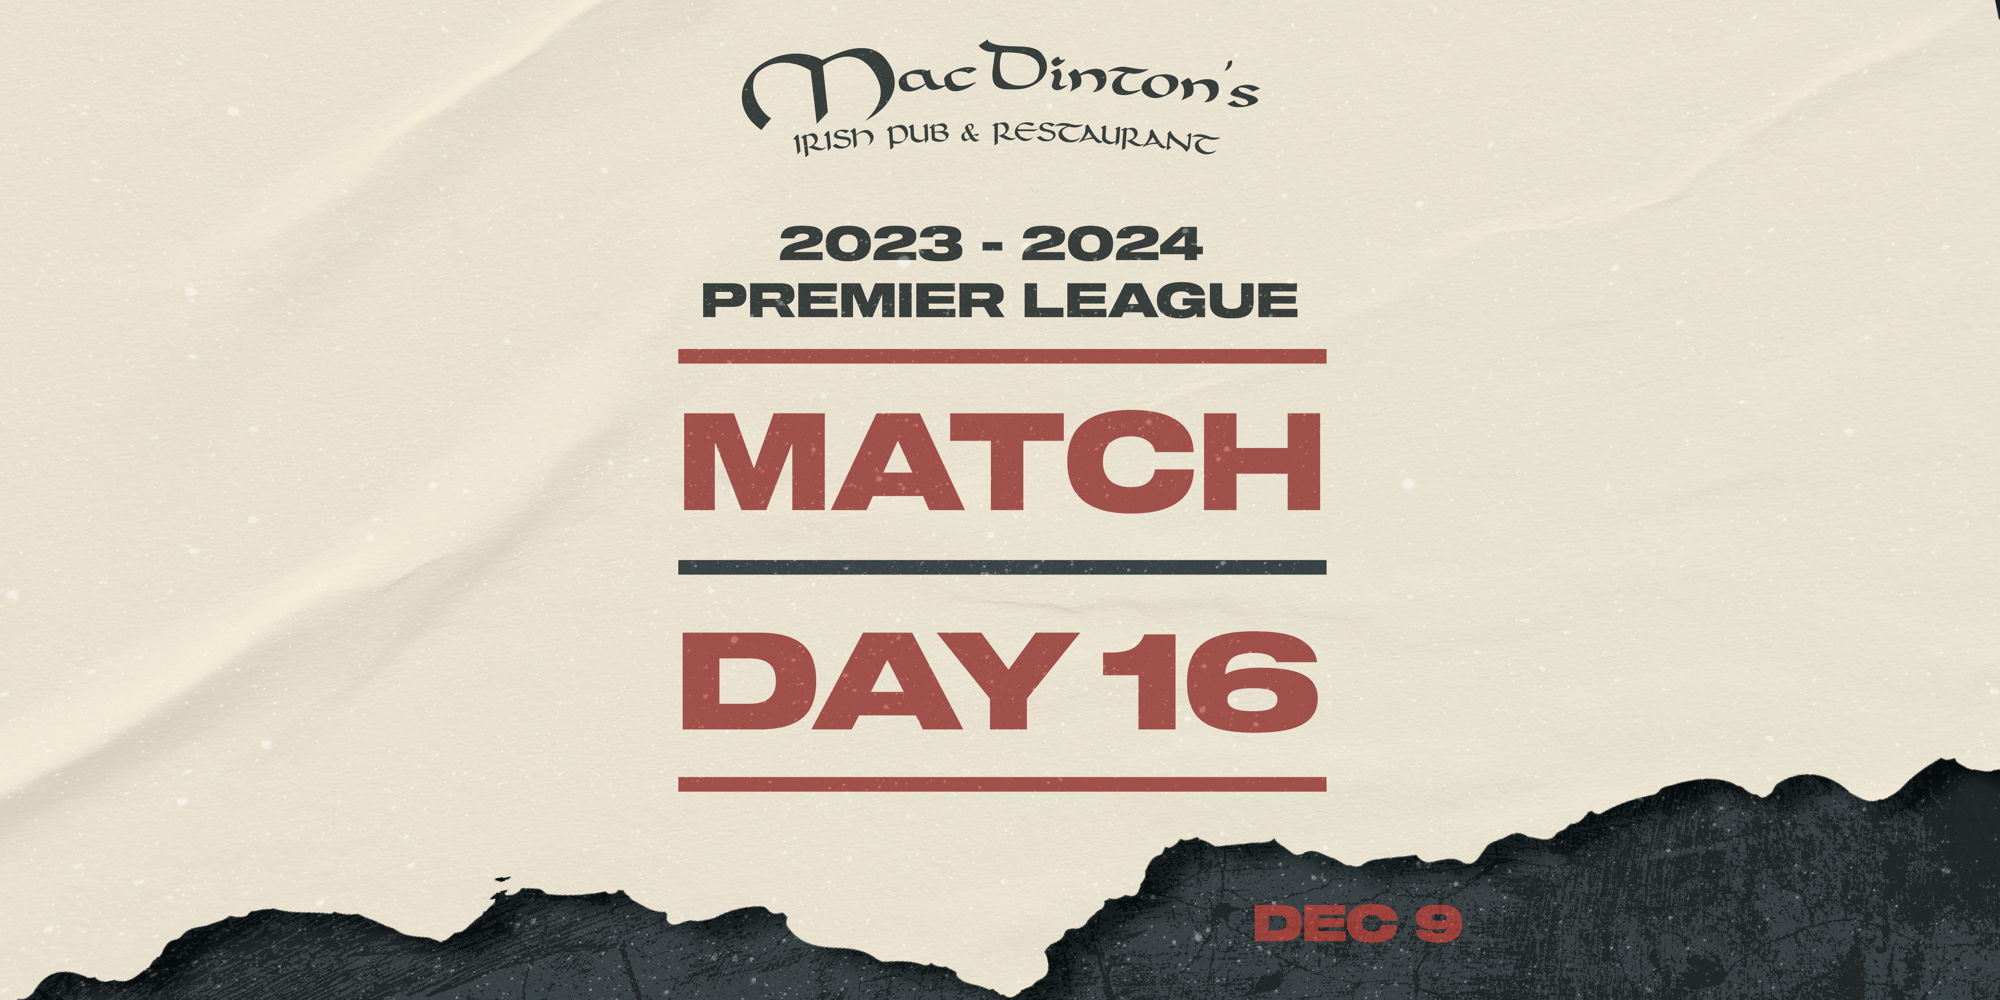 Premier League Match Day 16 promotional image